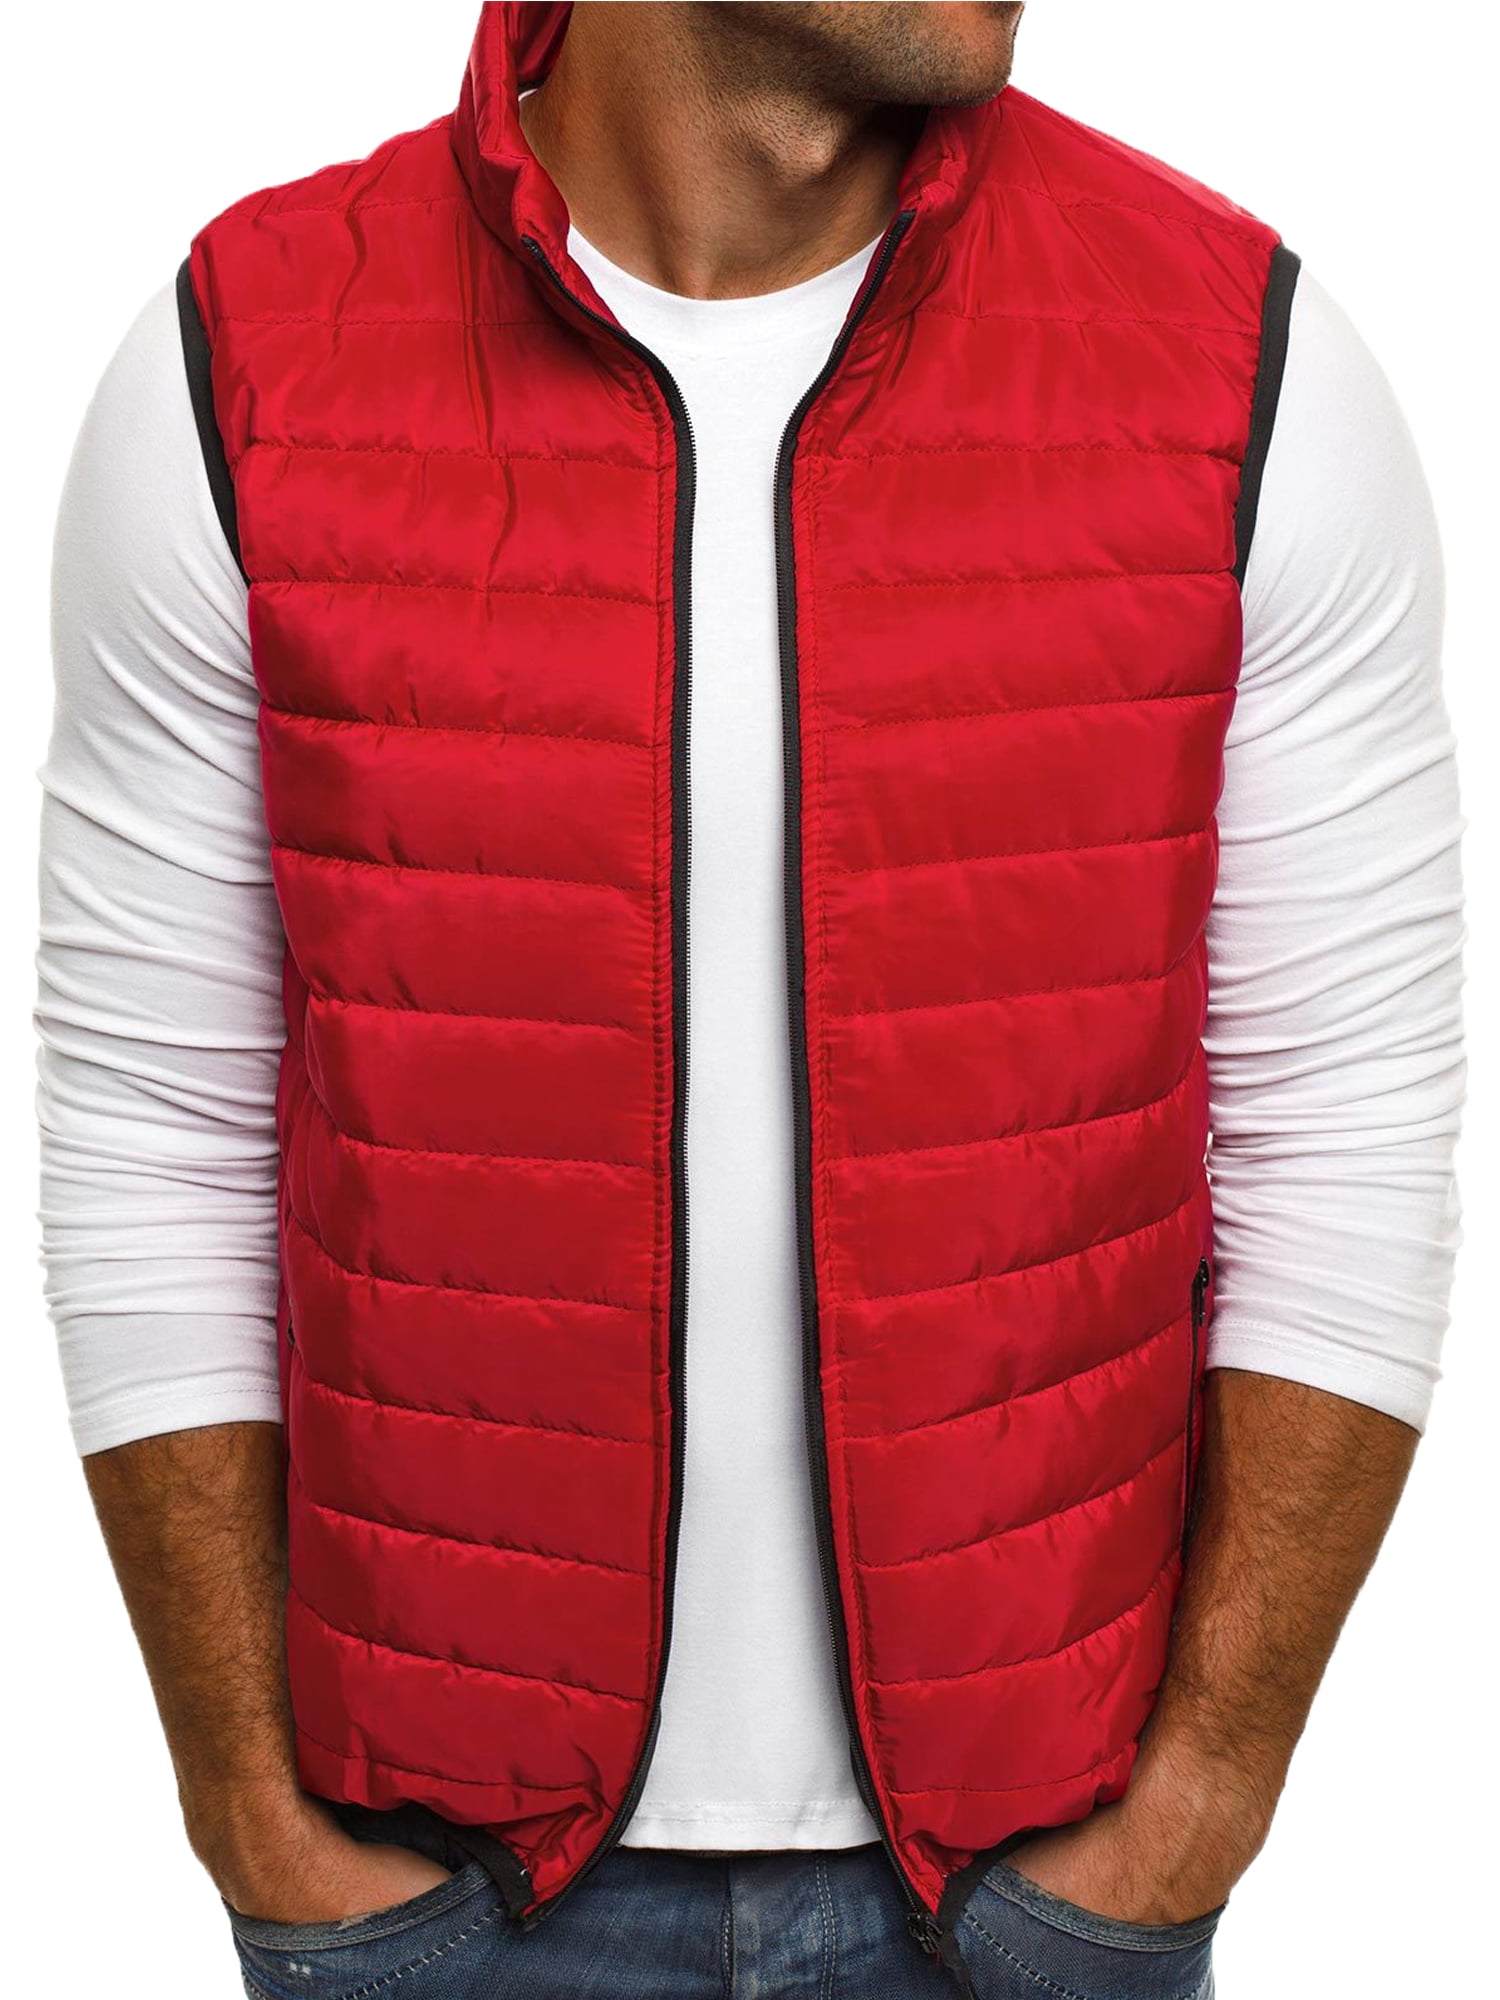 Men Casual Pocket Waistcoat Vest Winter Warm Jacket Tops Coat Outwear Plus Size